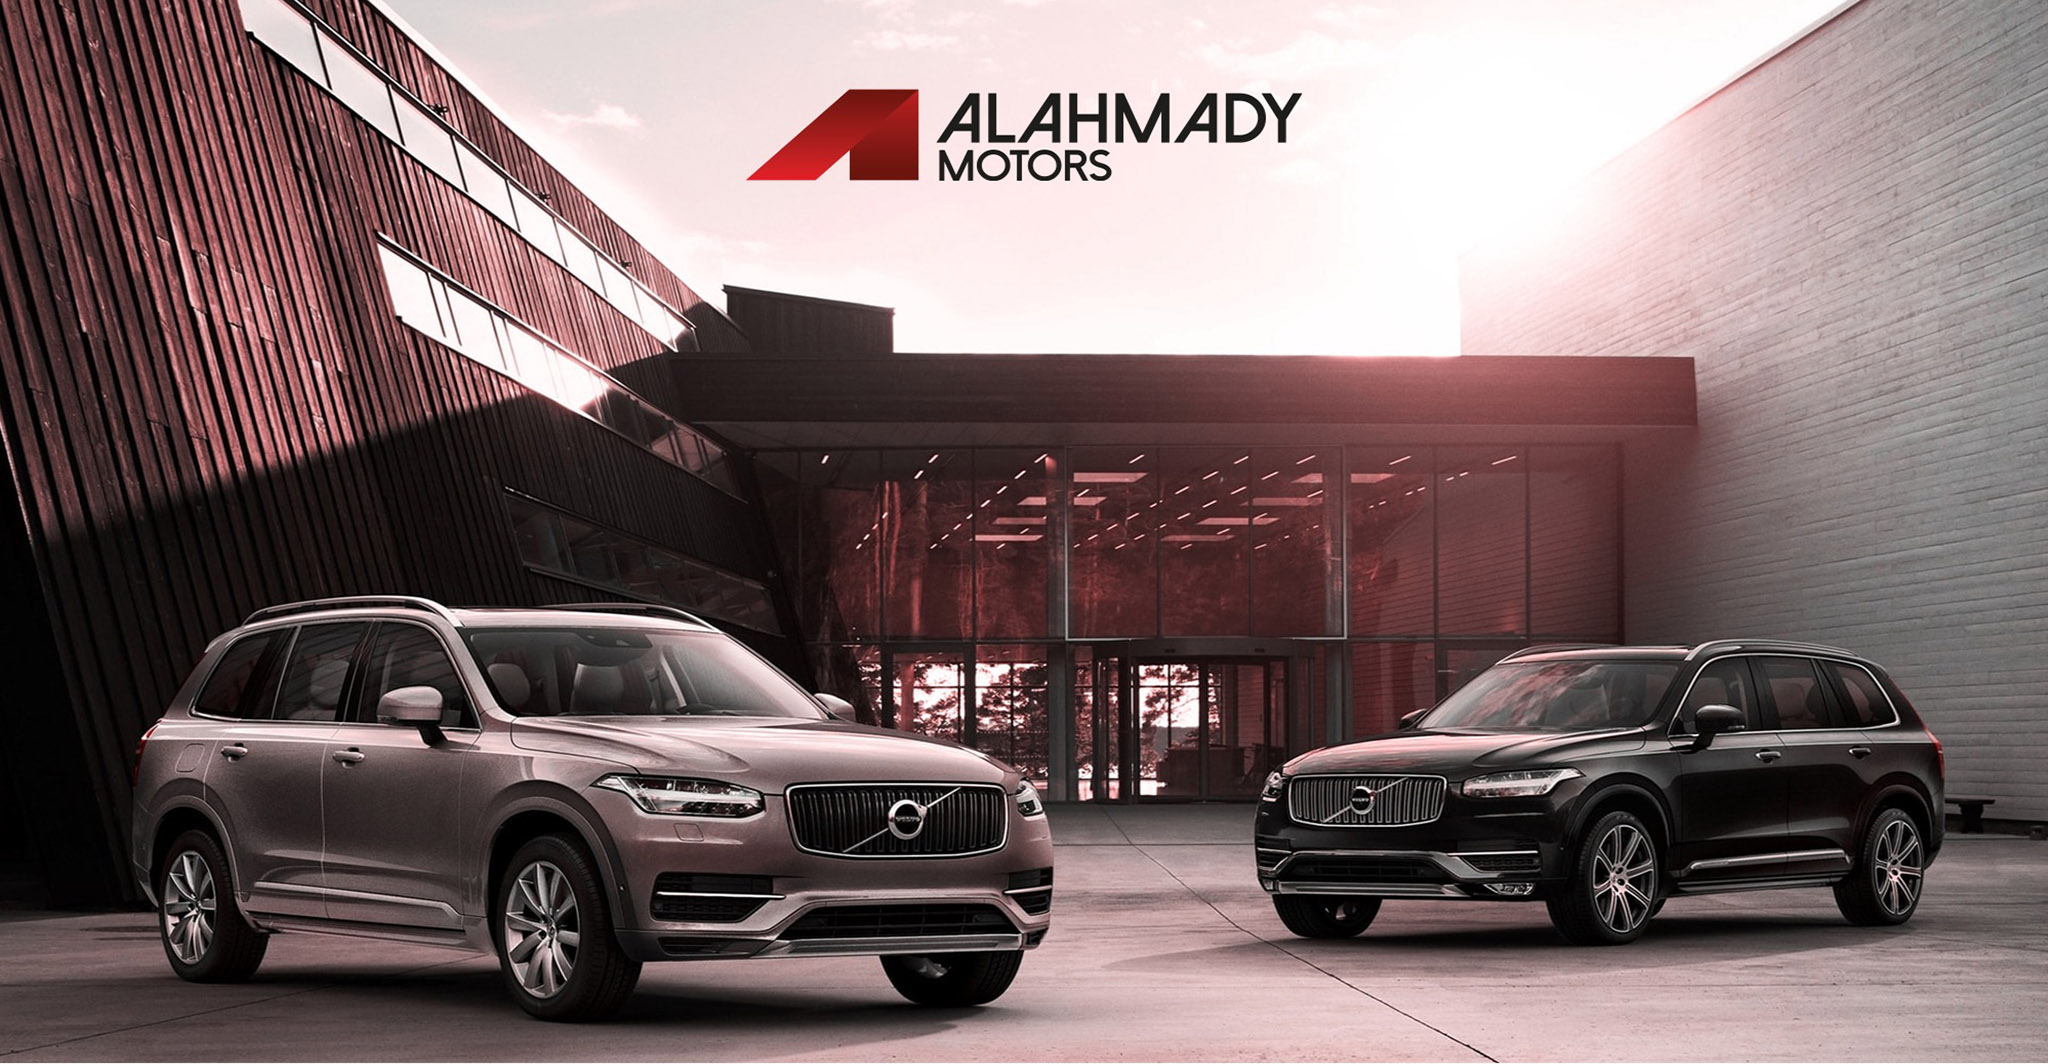 Al Ahmady Motors